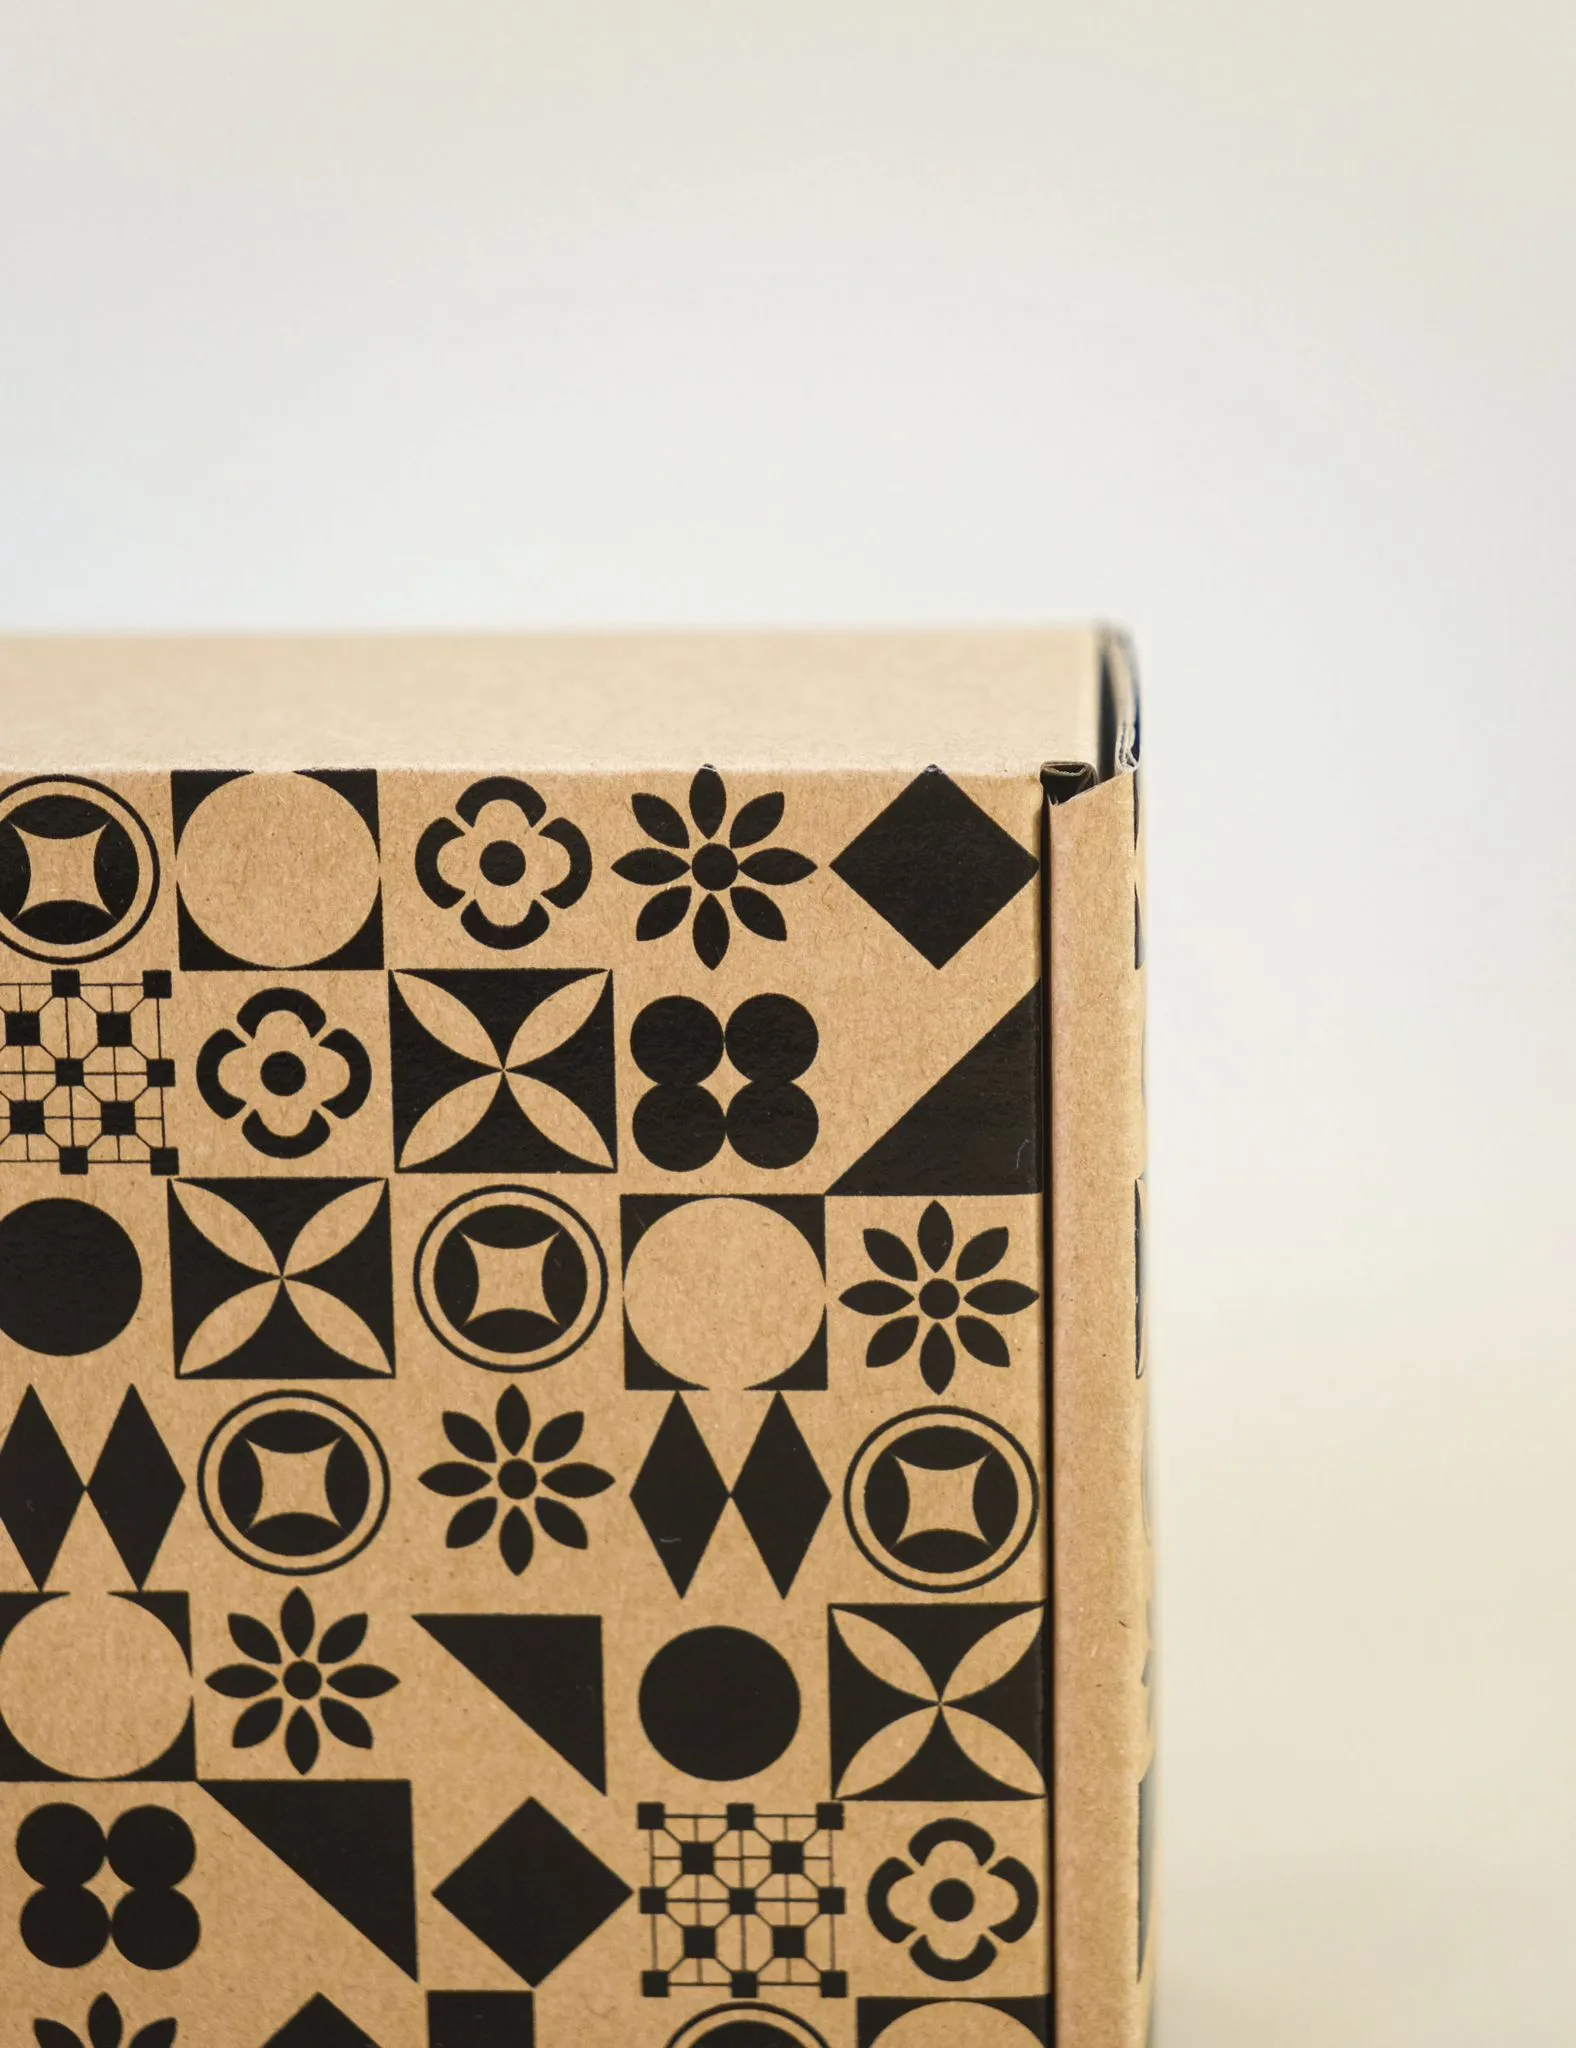 環保單黑郵寄盒側邊的特寫，清晰顯示出黑色幾何圖形設計和「BMpack」的品牌標誌，背景為淺色調，強調其環保和美學特色